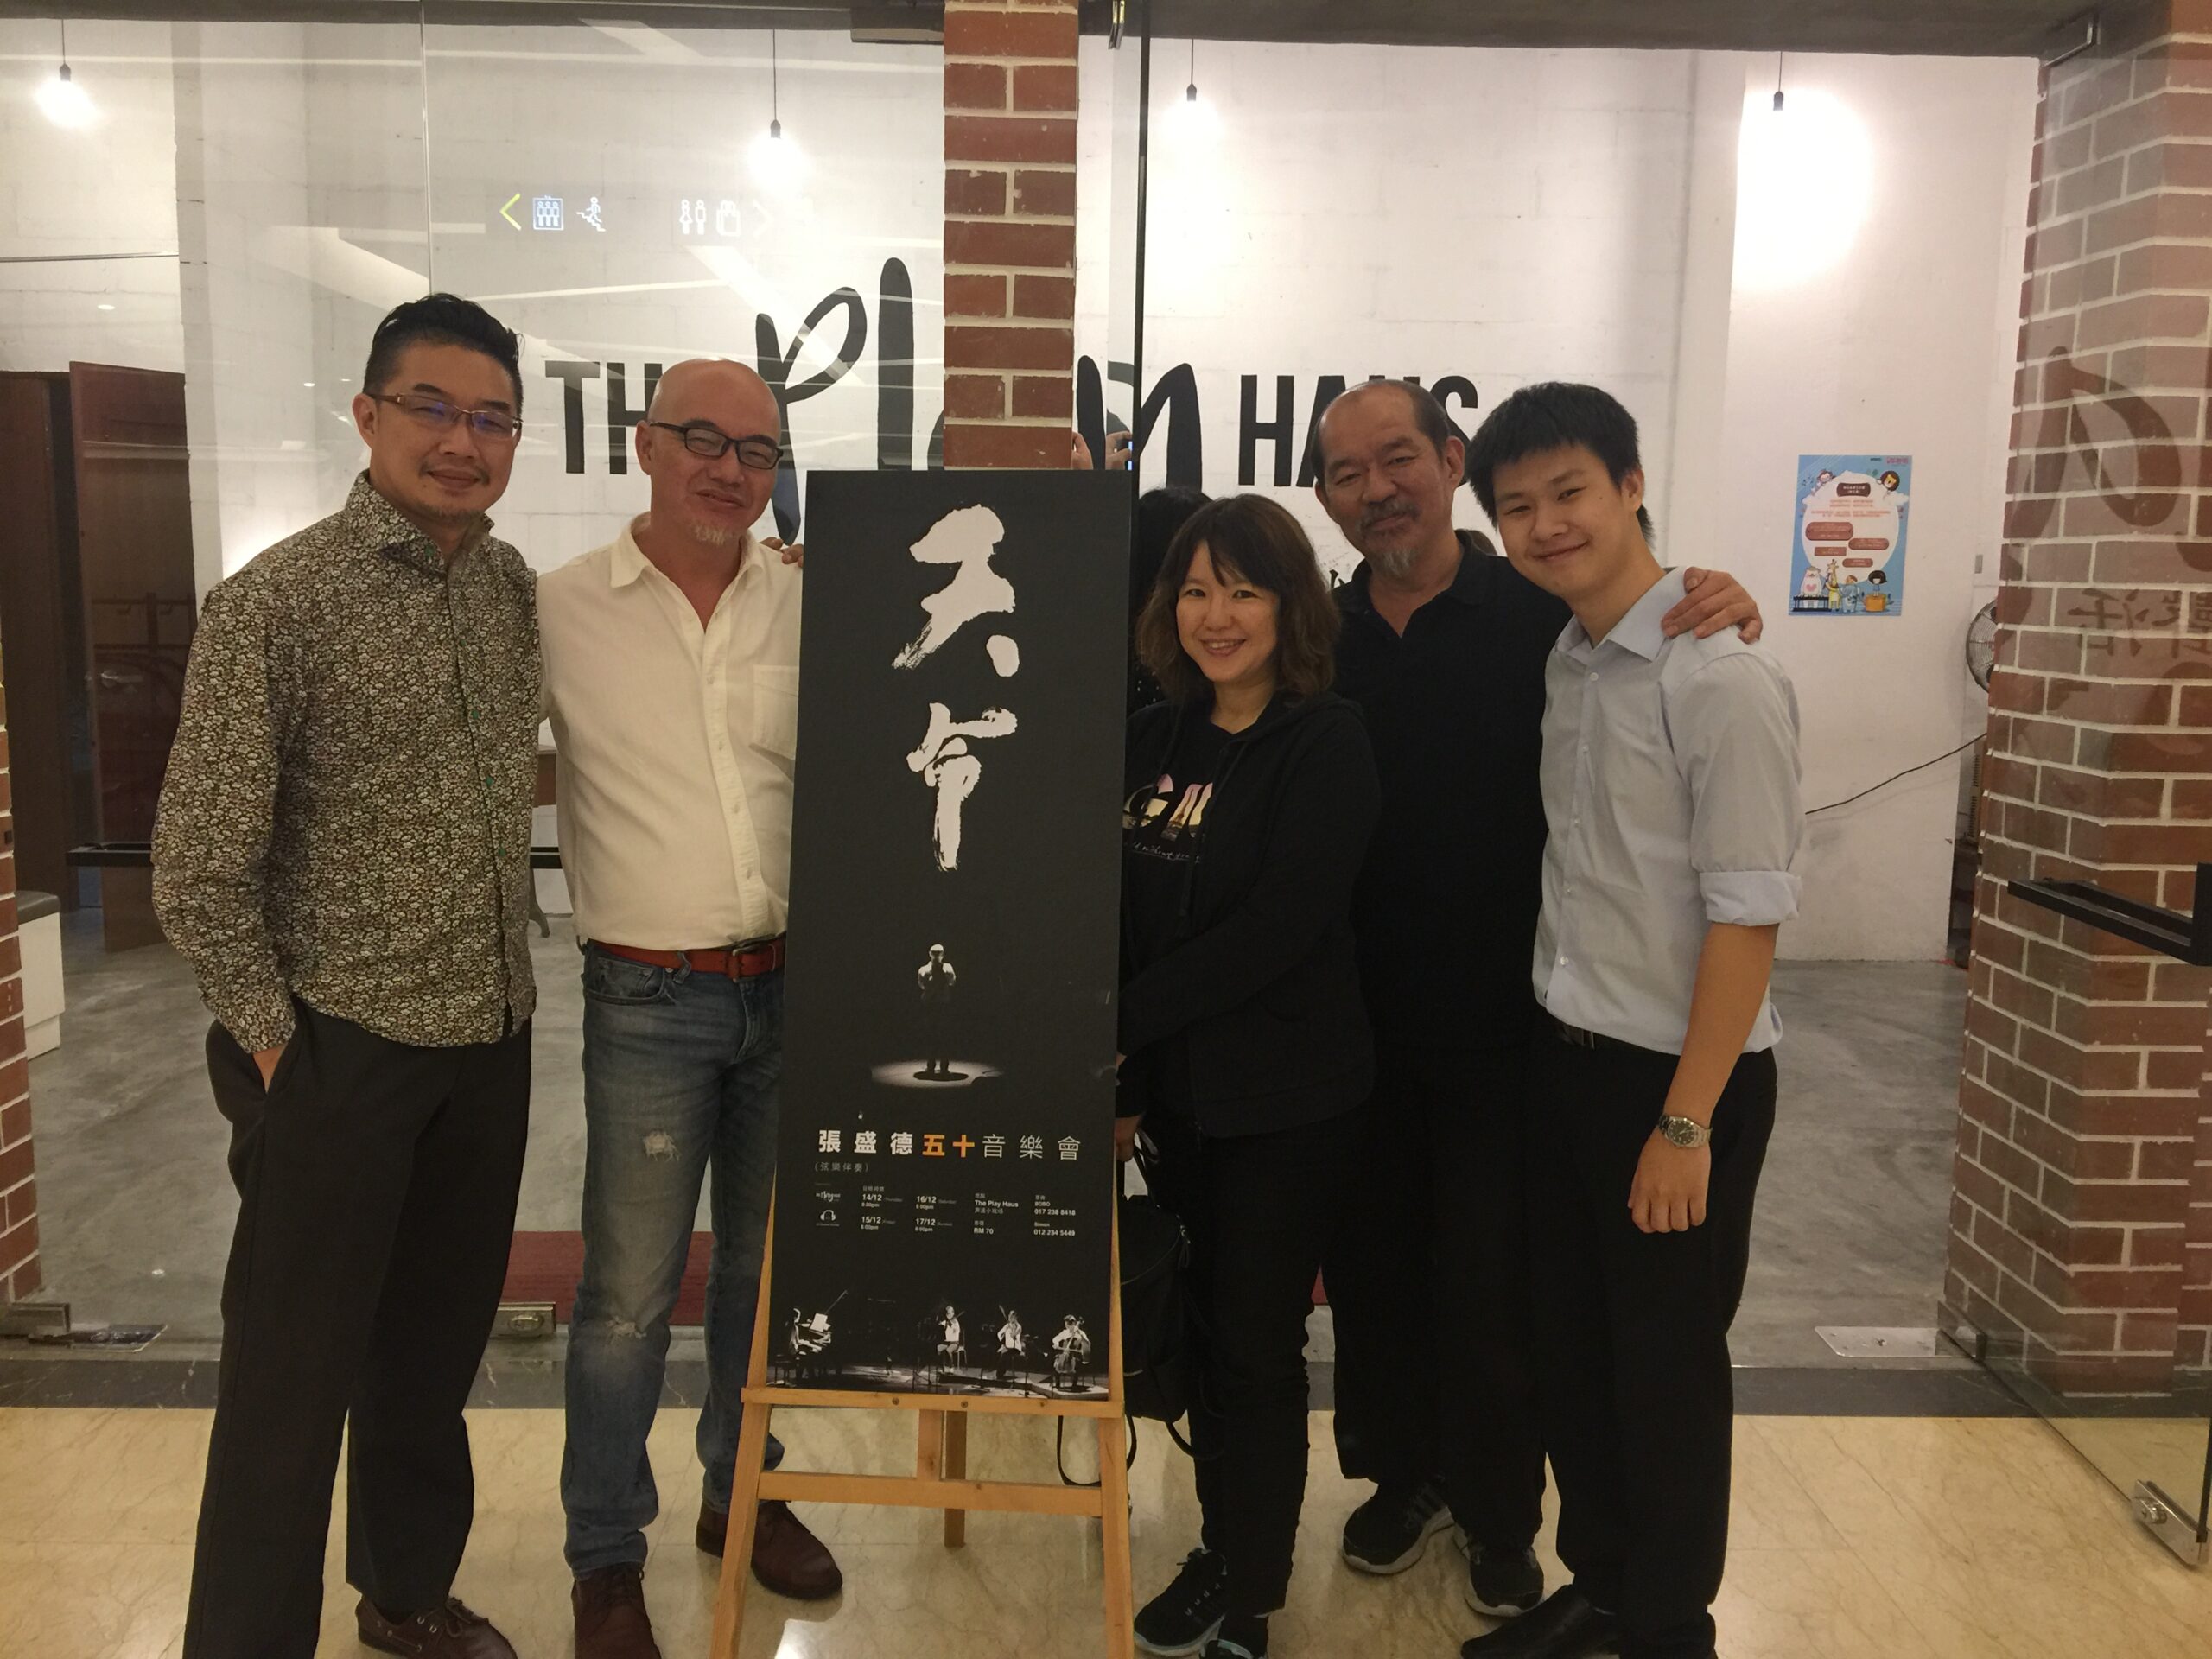 Playhouse, William Chong, JJ Tan, Yuan Leow Yunn, Chang Sheng Teck